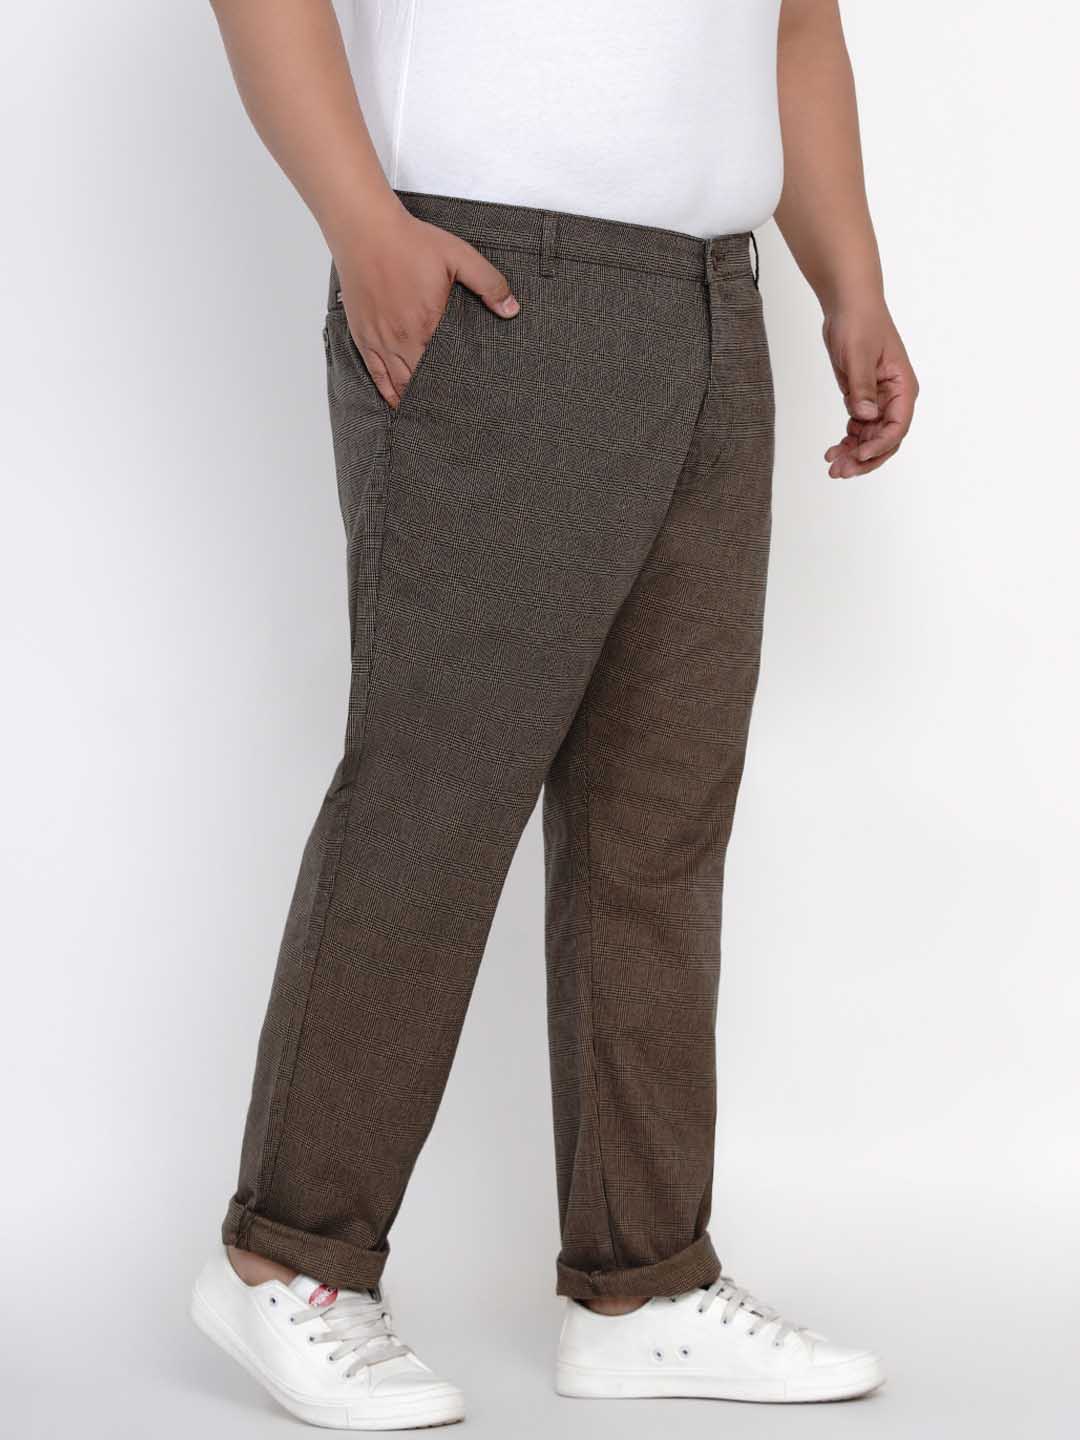 bottomwear/trousers/JPTR2148B/jptr2148b-2.jpg